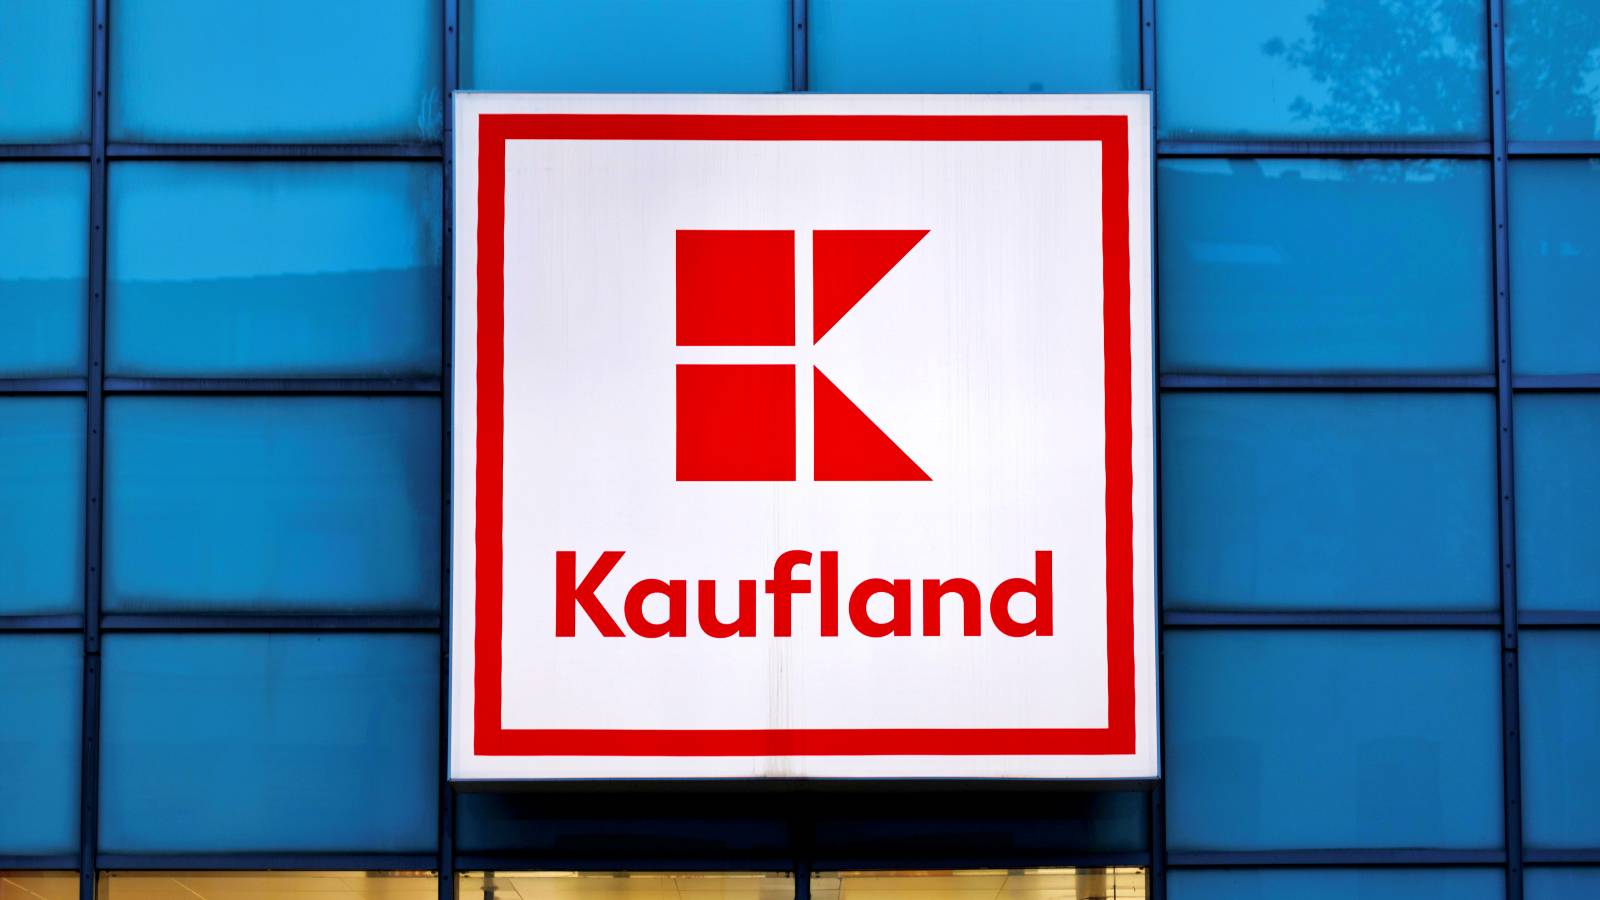 wspaniała wiadomość Kaufland upominek dla klientów